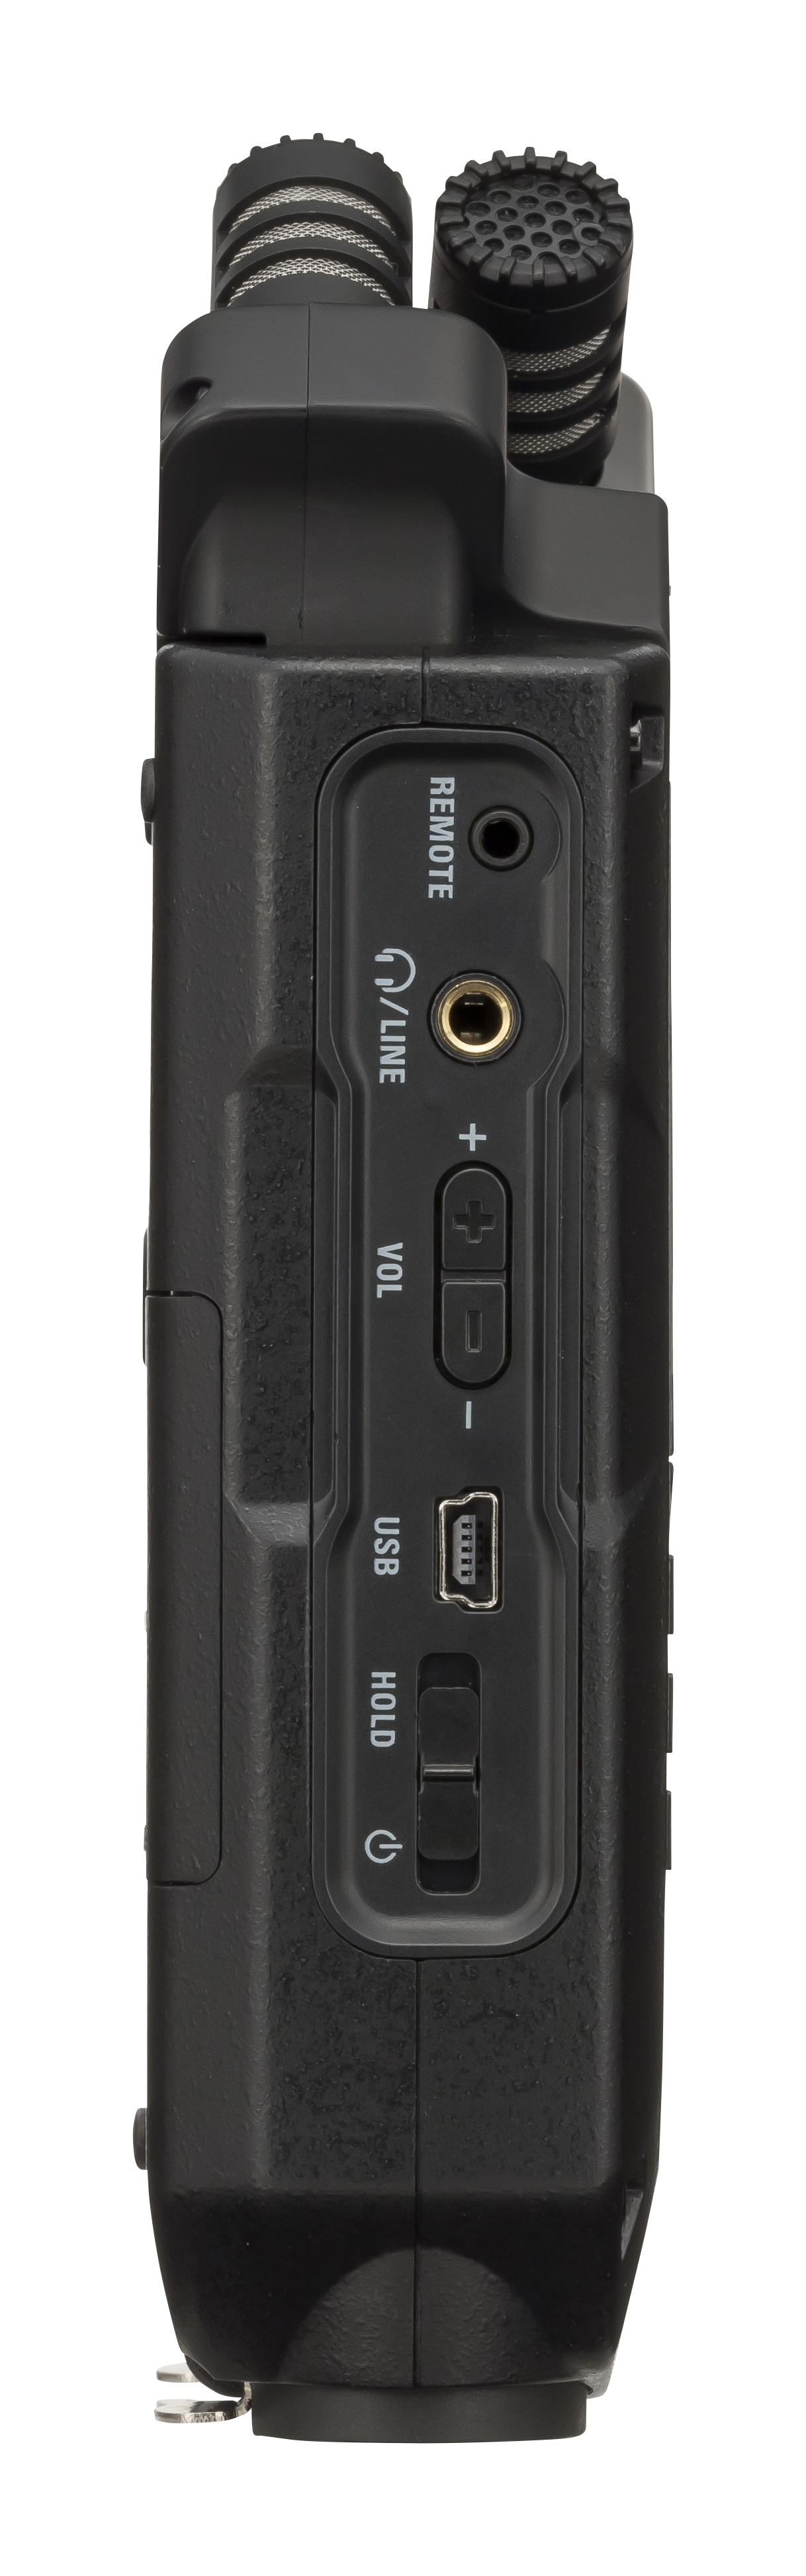 Zoom H4n Pro Black - Mobile Recorder - Variation 3